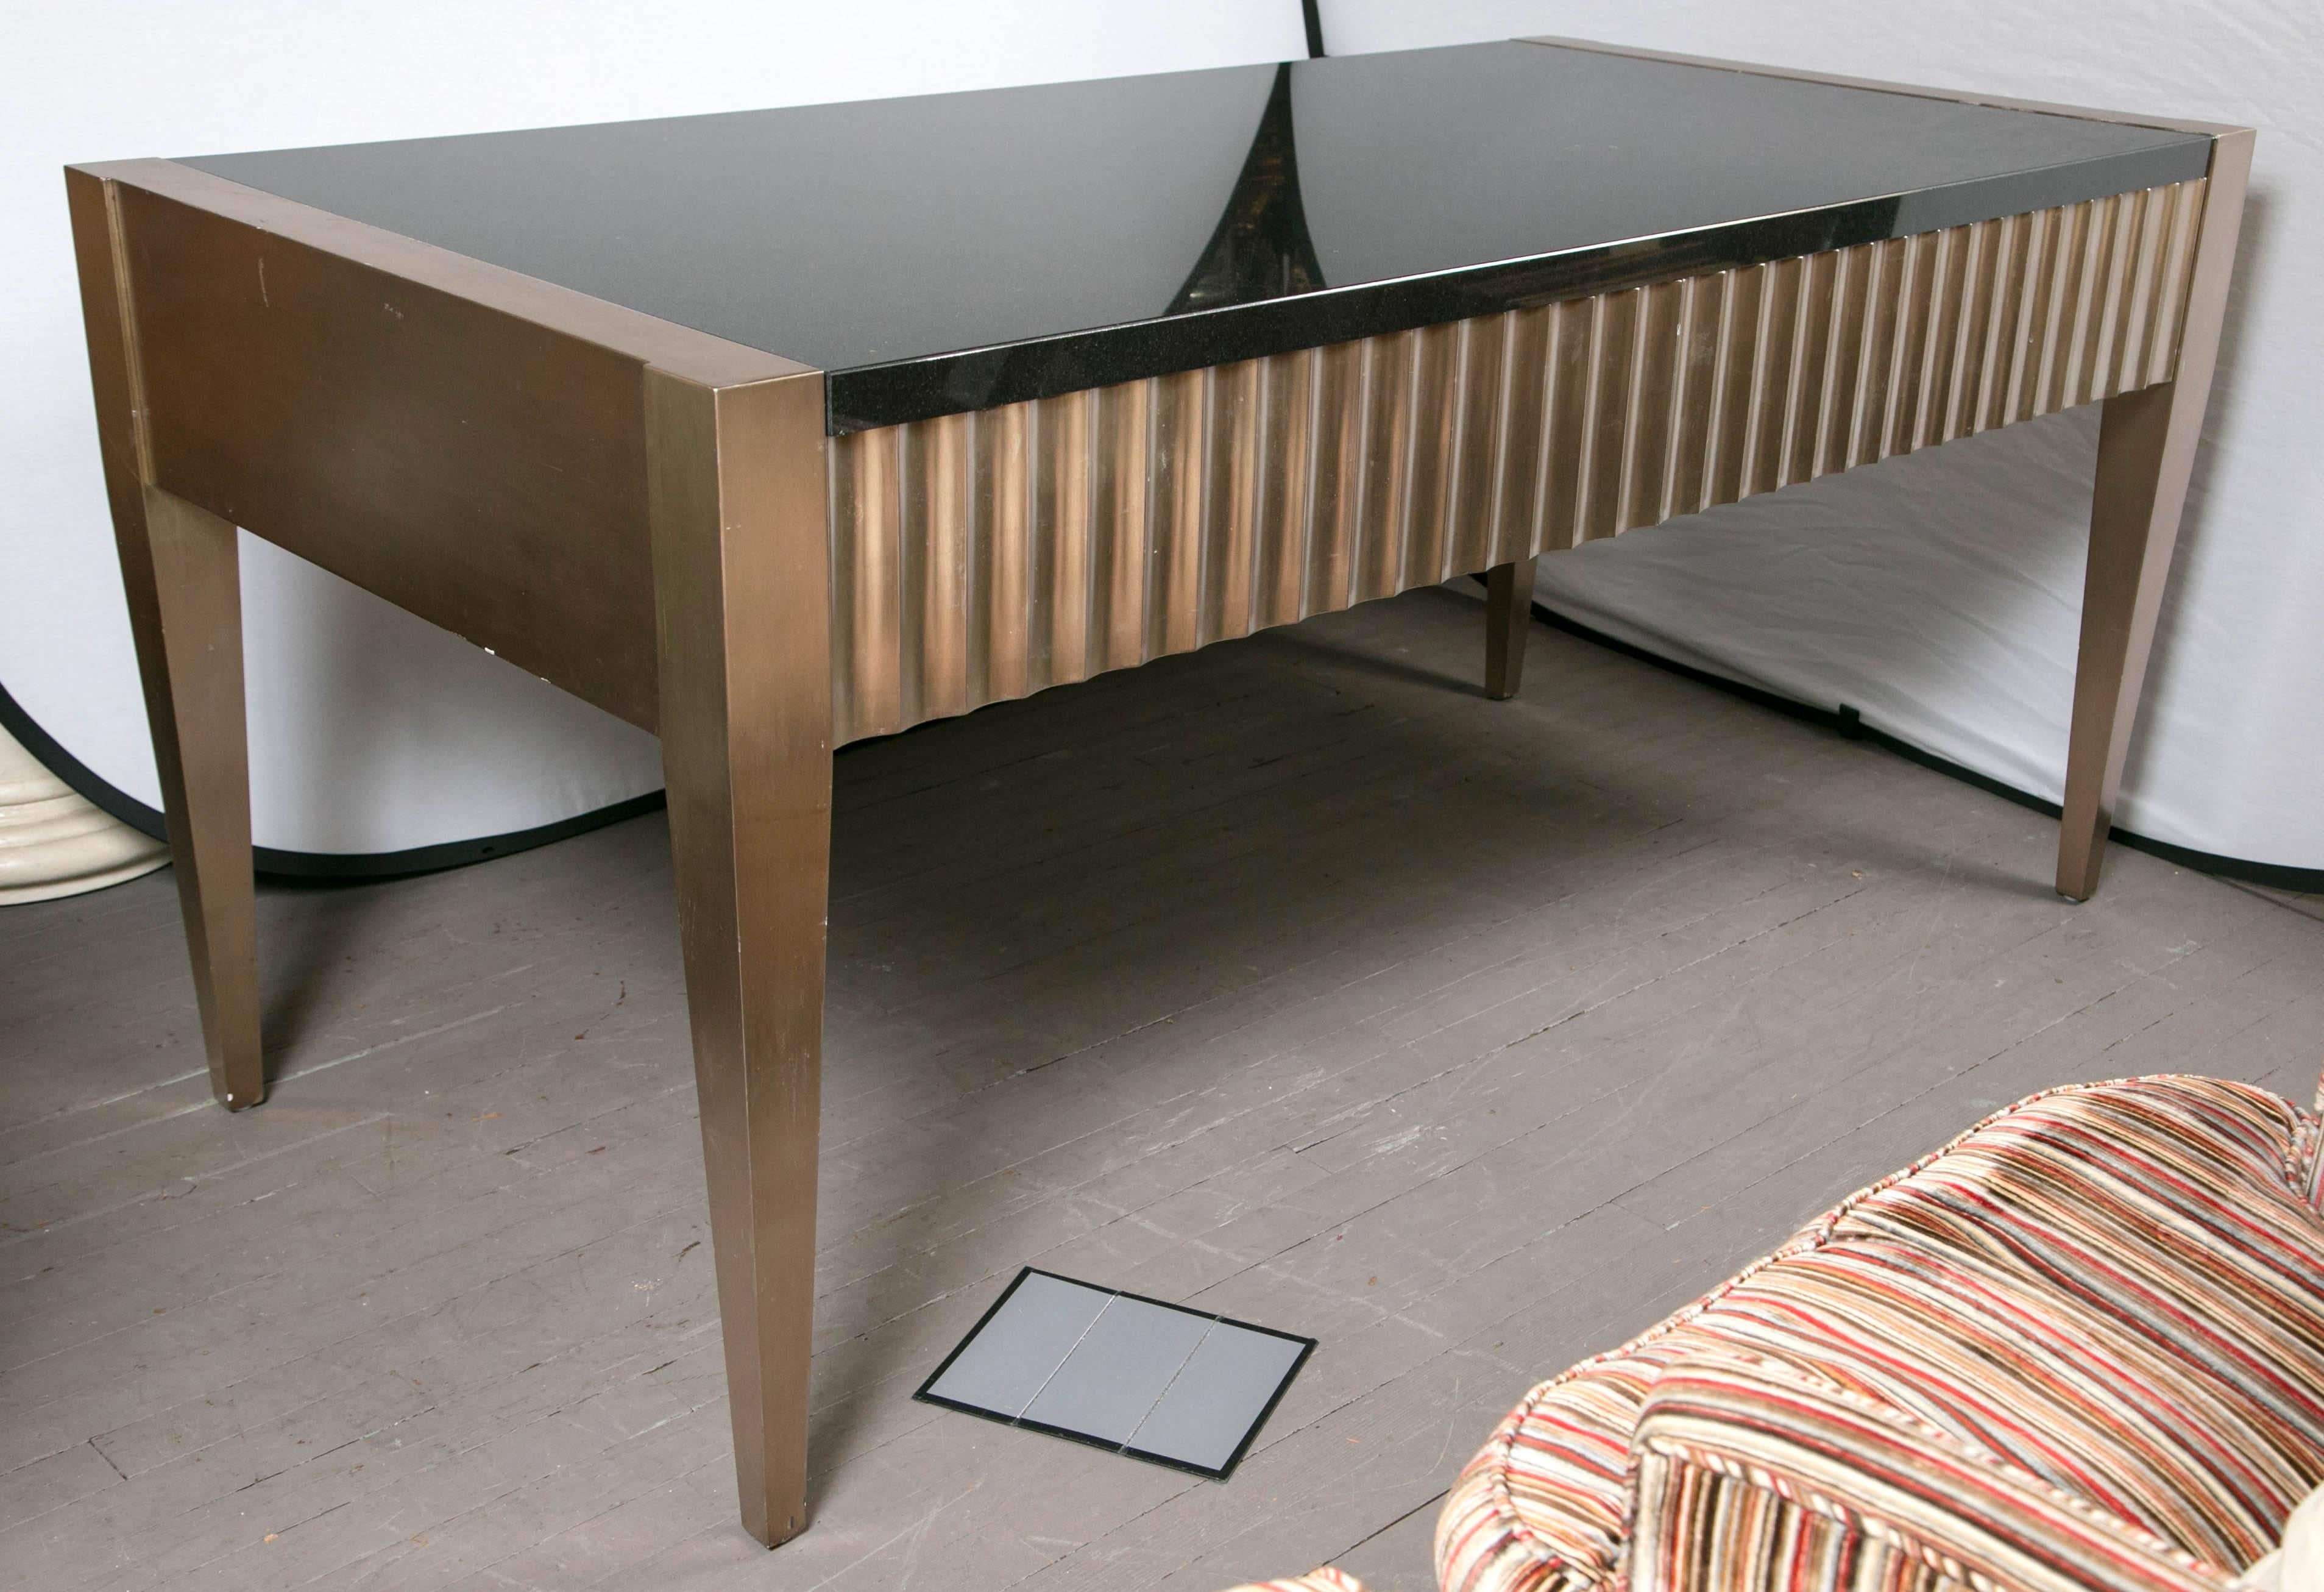 Dieser Tisch wurde von J. Robert Scott entworfen, etwa 1995. Er hat eine eingelegte dunkle Granitplatte und zwei Schubladen. Scott nannte es 